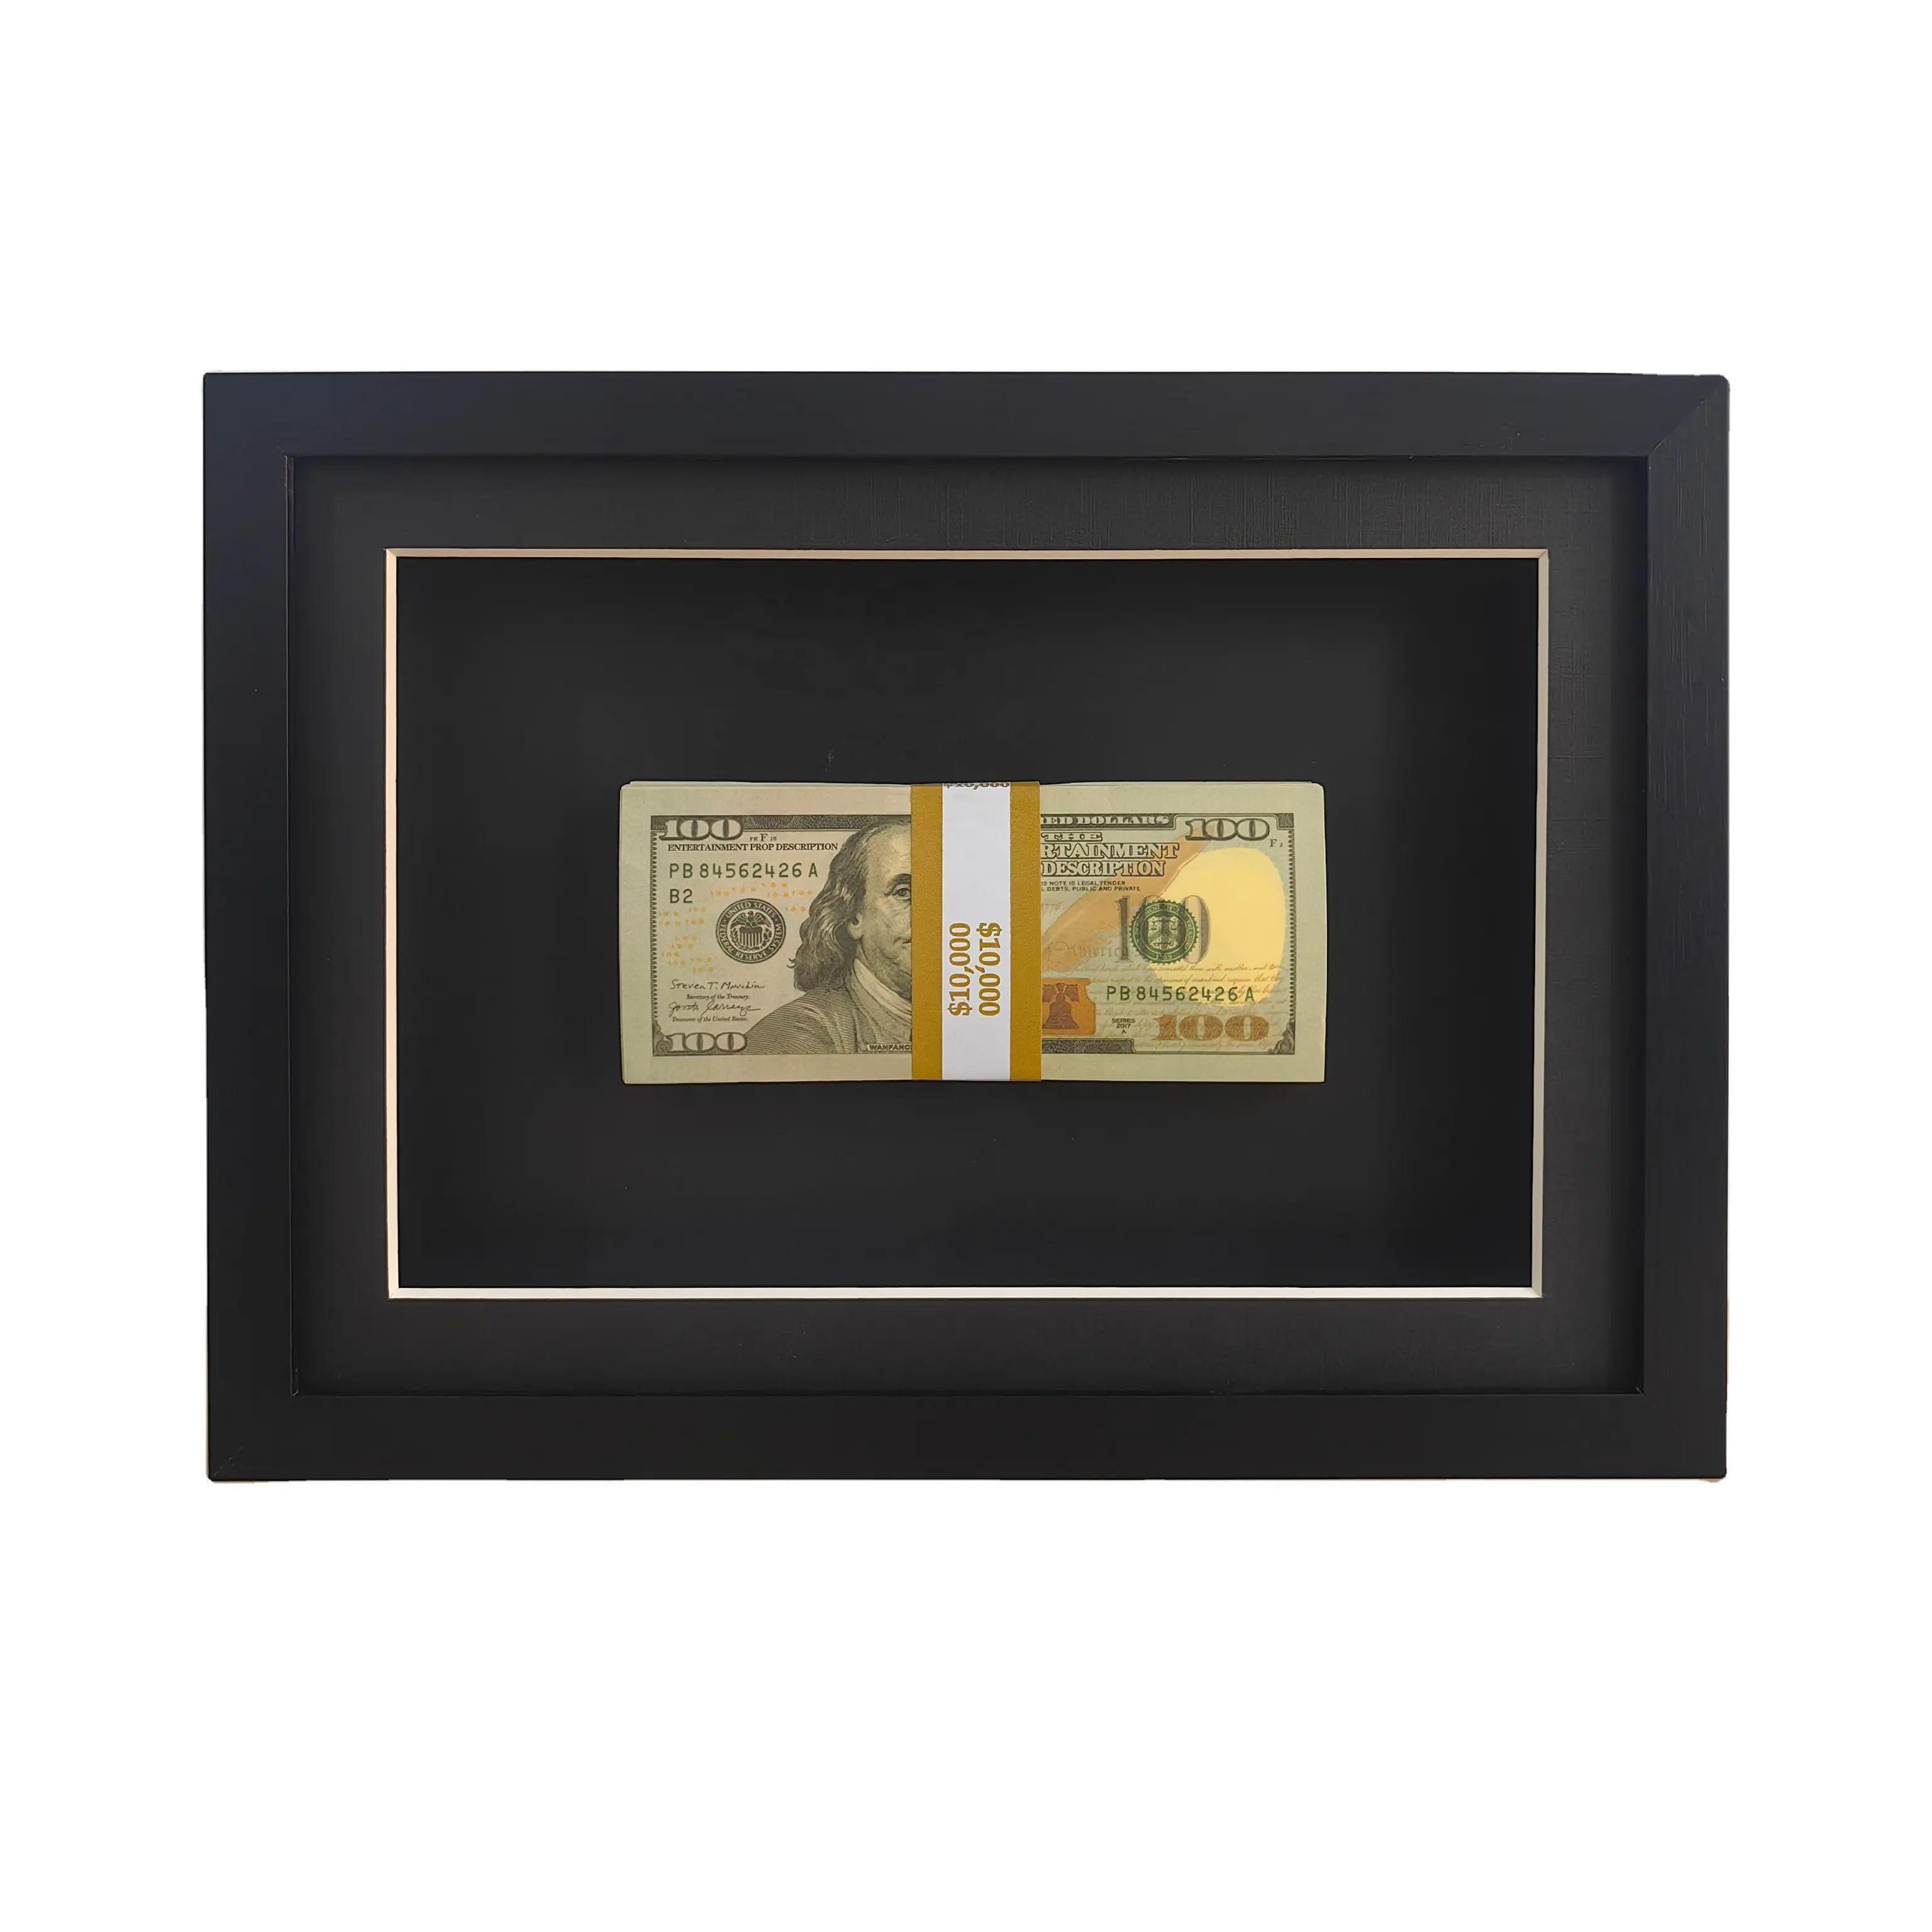 All Black dollar bill frame 10x10 inch 30x30 cm 5 6cm depth with money Shadow Box Frame Display US dollars Case deep box Frame